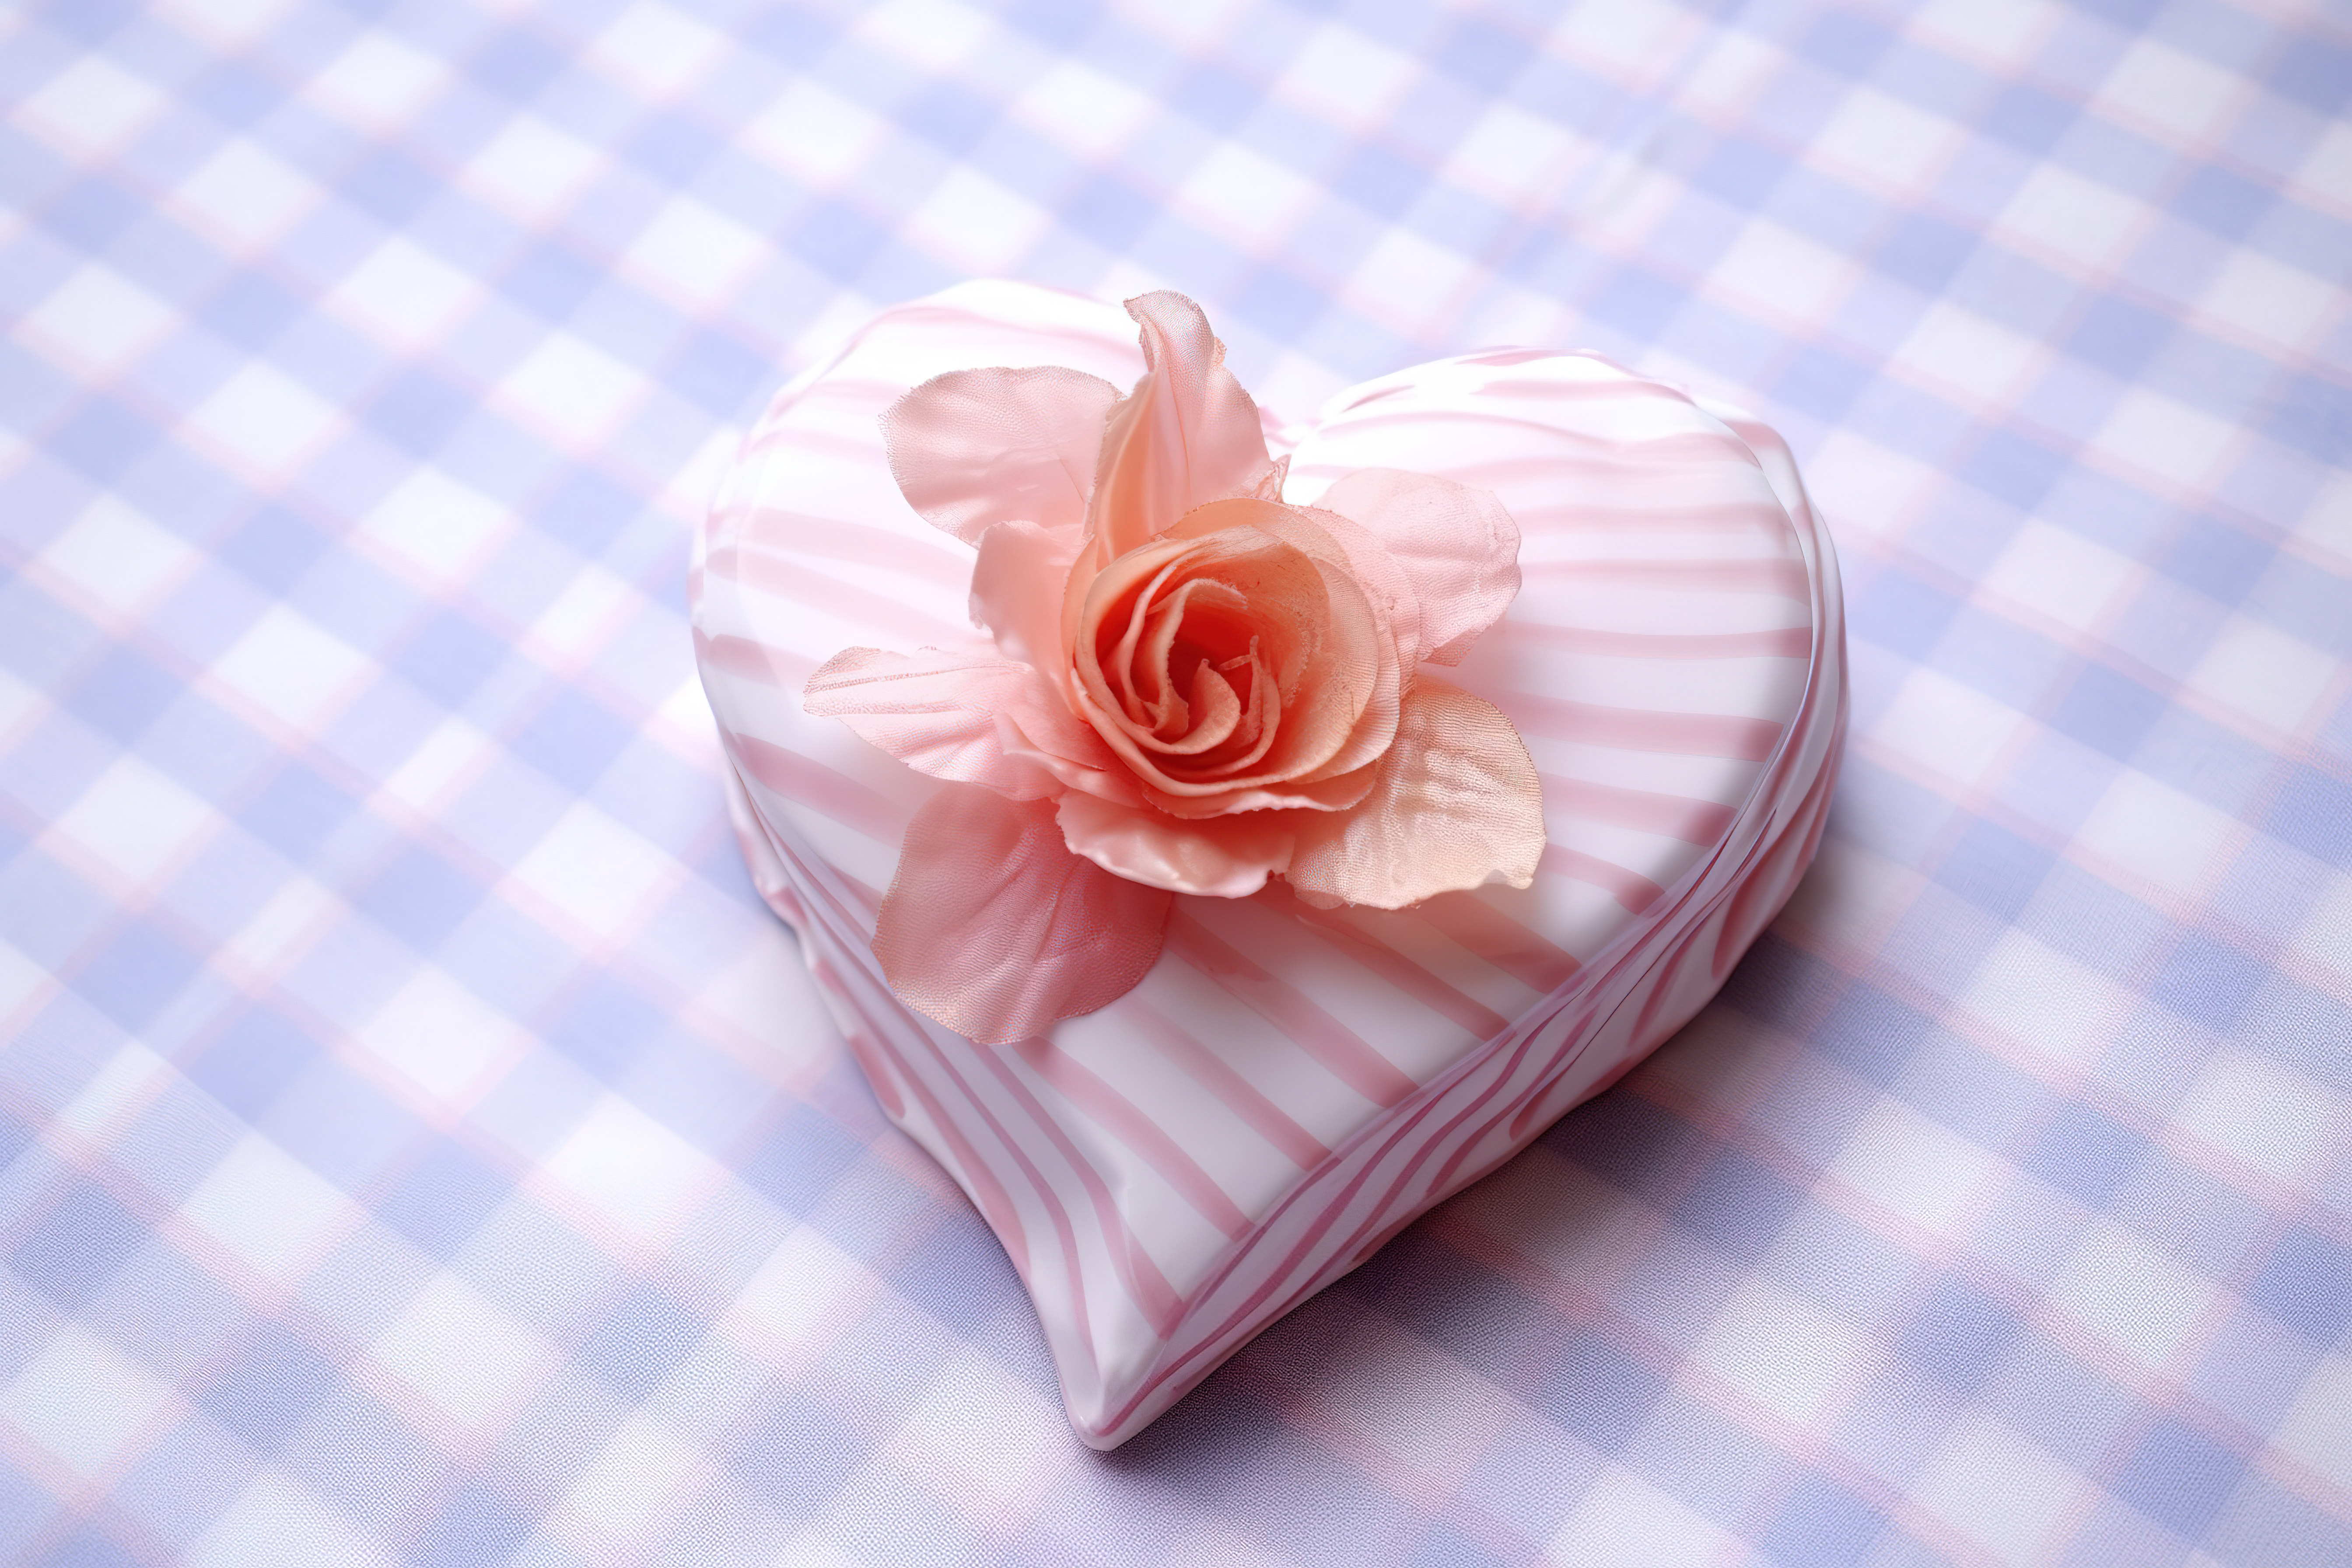 一朵心形的粉红色花朵坐落在白色格子桌布上图片